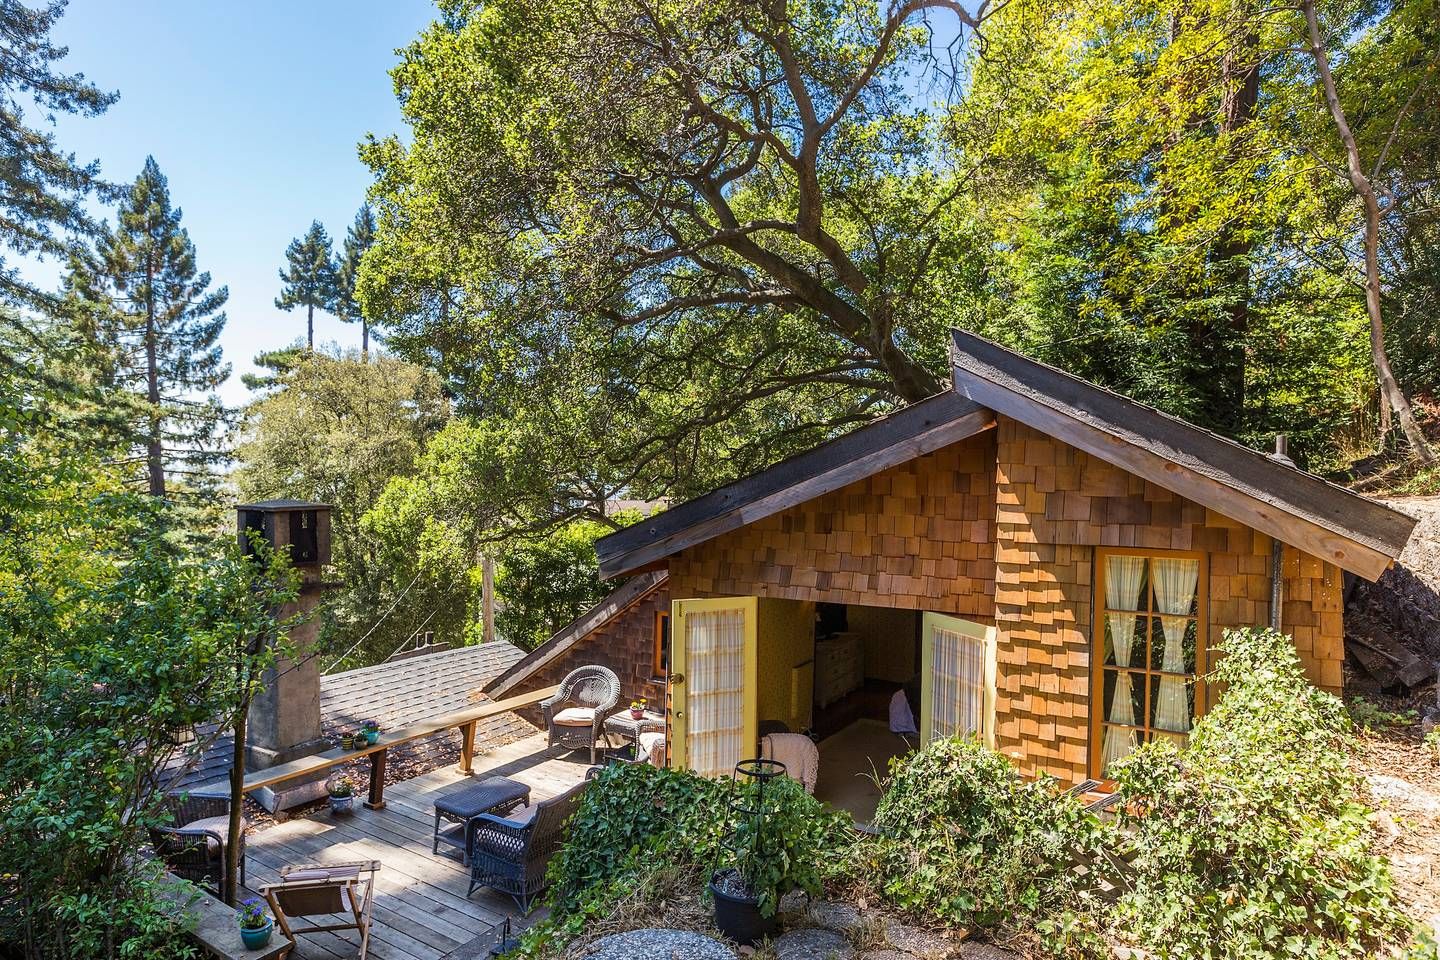 Nhà xe cũ cho bất động sản ở California hiện có các khu sinh hoạt độc lập có sẵn trên Airbnb . Chỉ cần chuẩn bị cho mình nội thất màu vàng hoang dã.